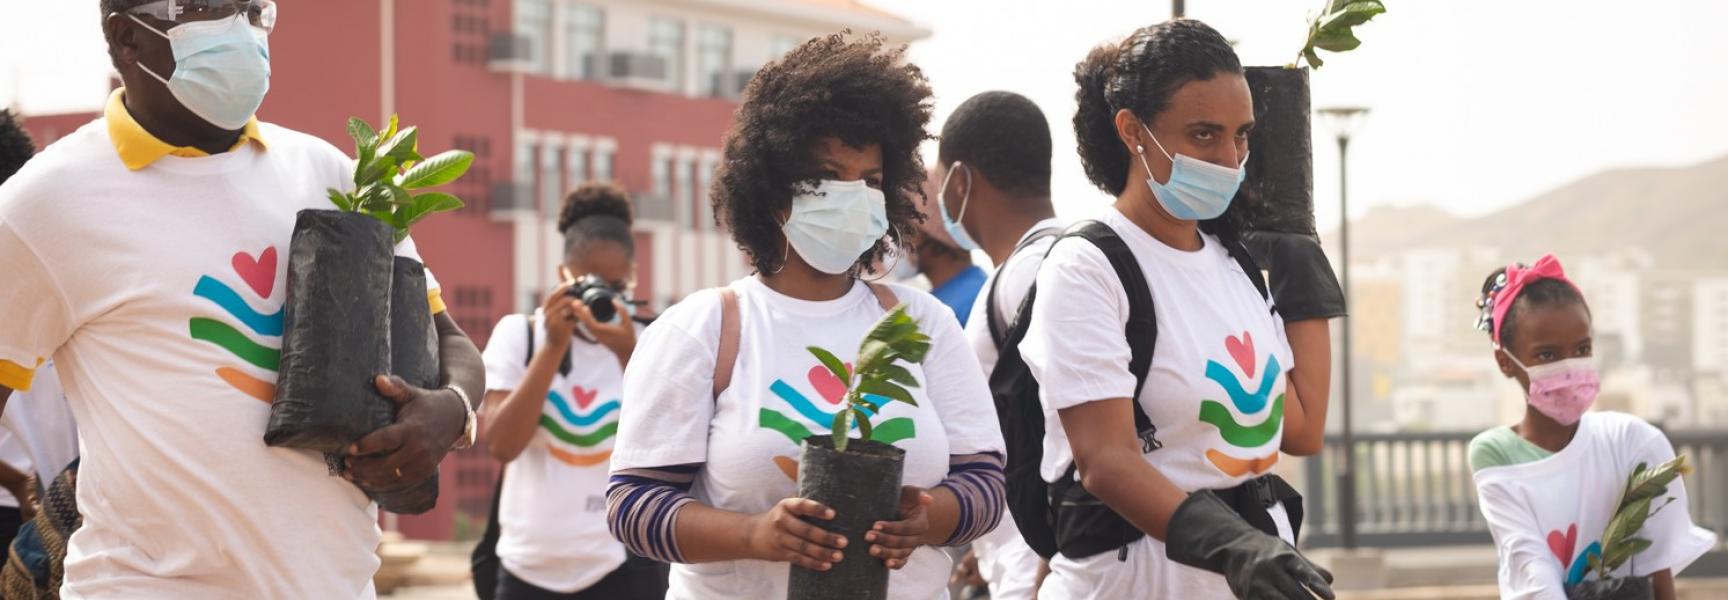 Plantando árboles en Cabo Verde